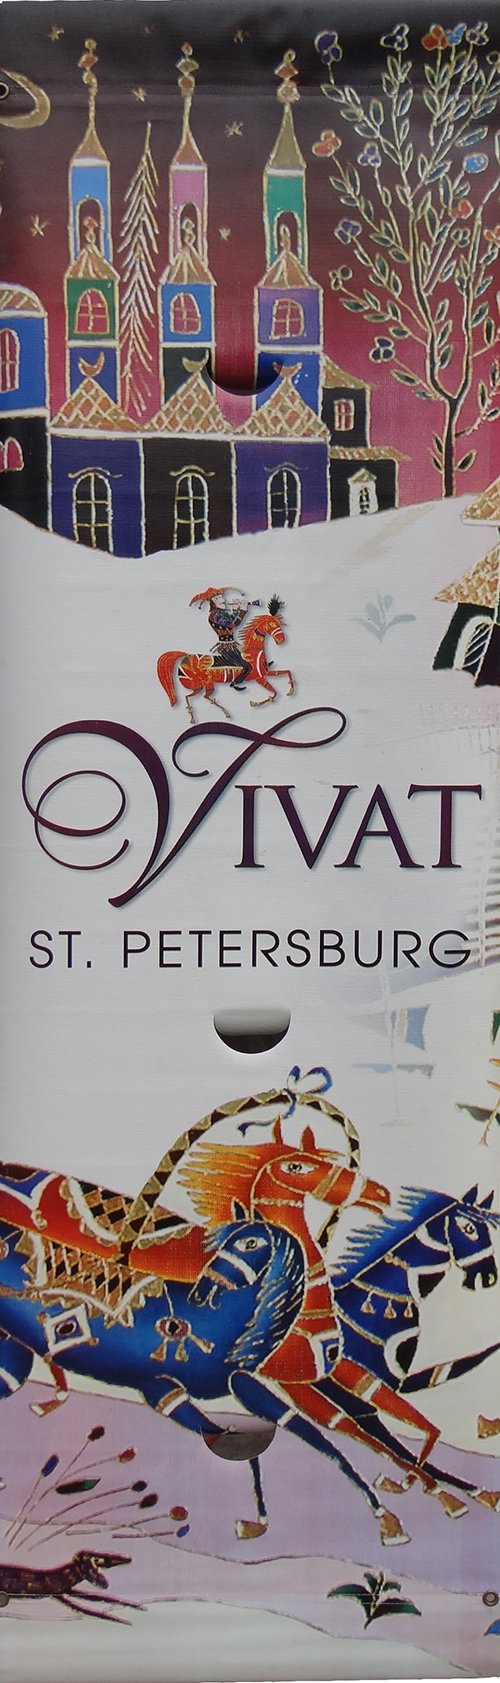 Vivat St Petersburg Celebration-Printed vinyl-Vivat Celebration, Baltimore-BetterWall